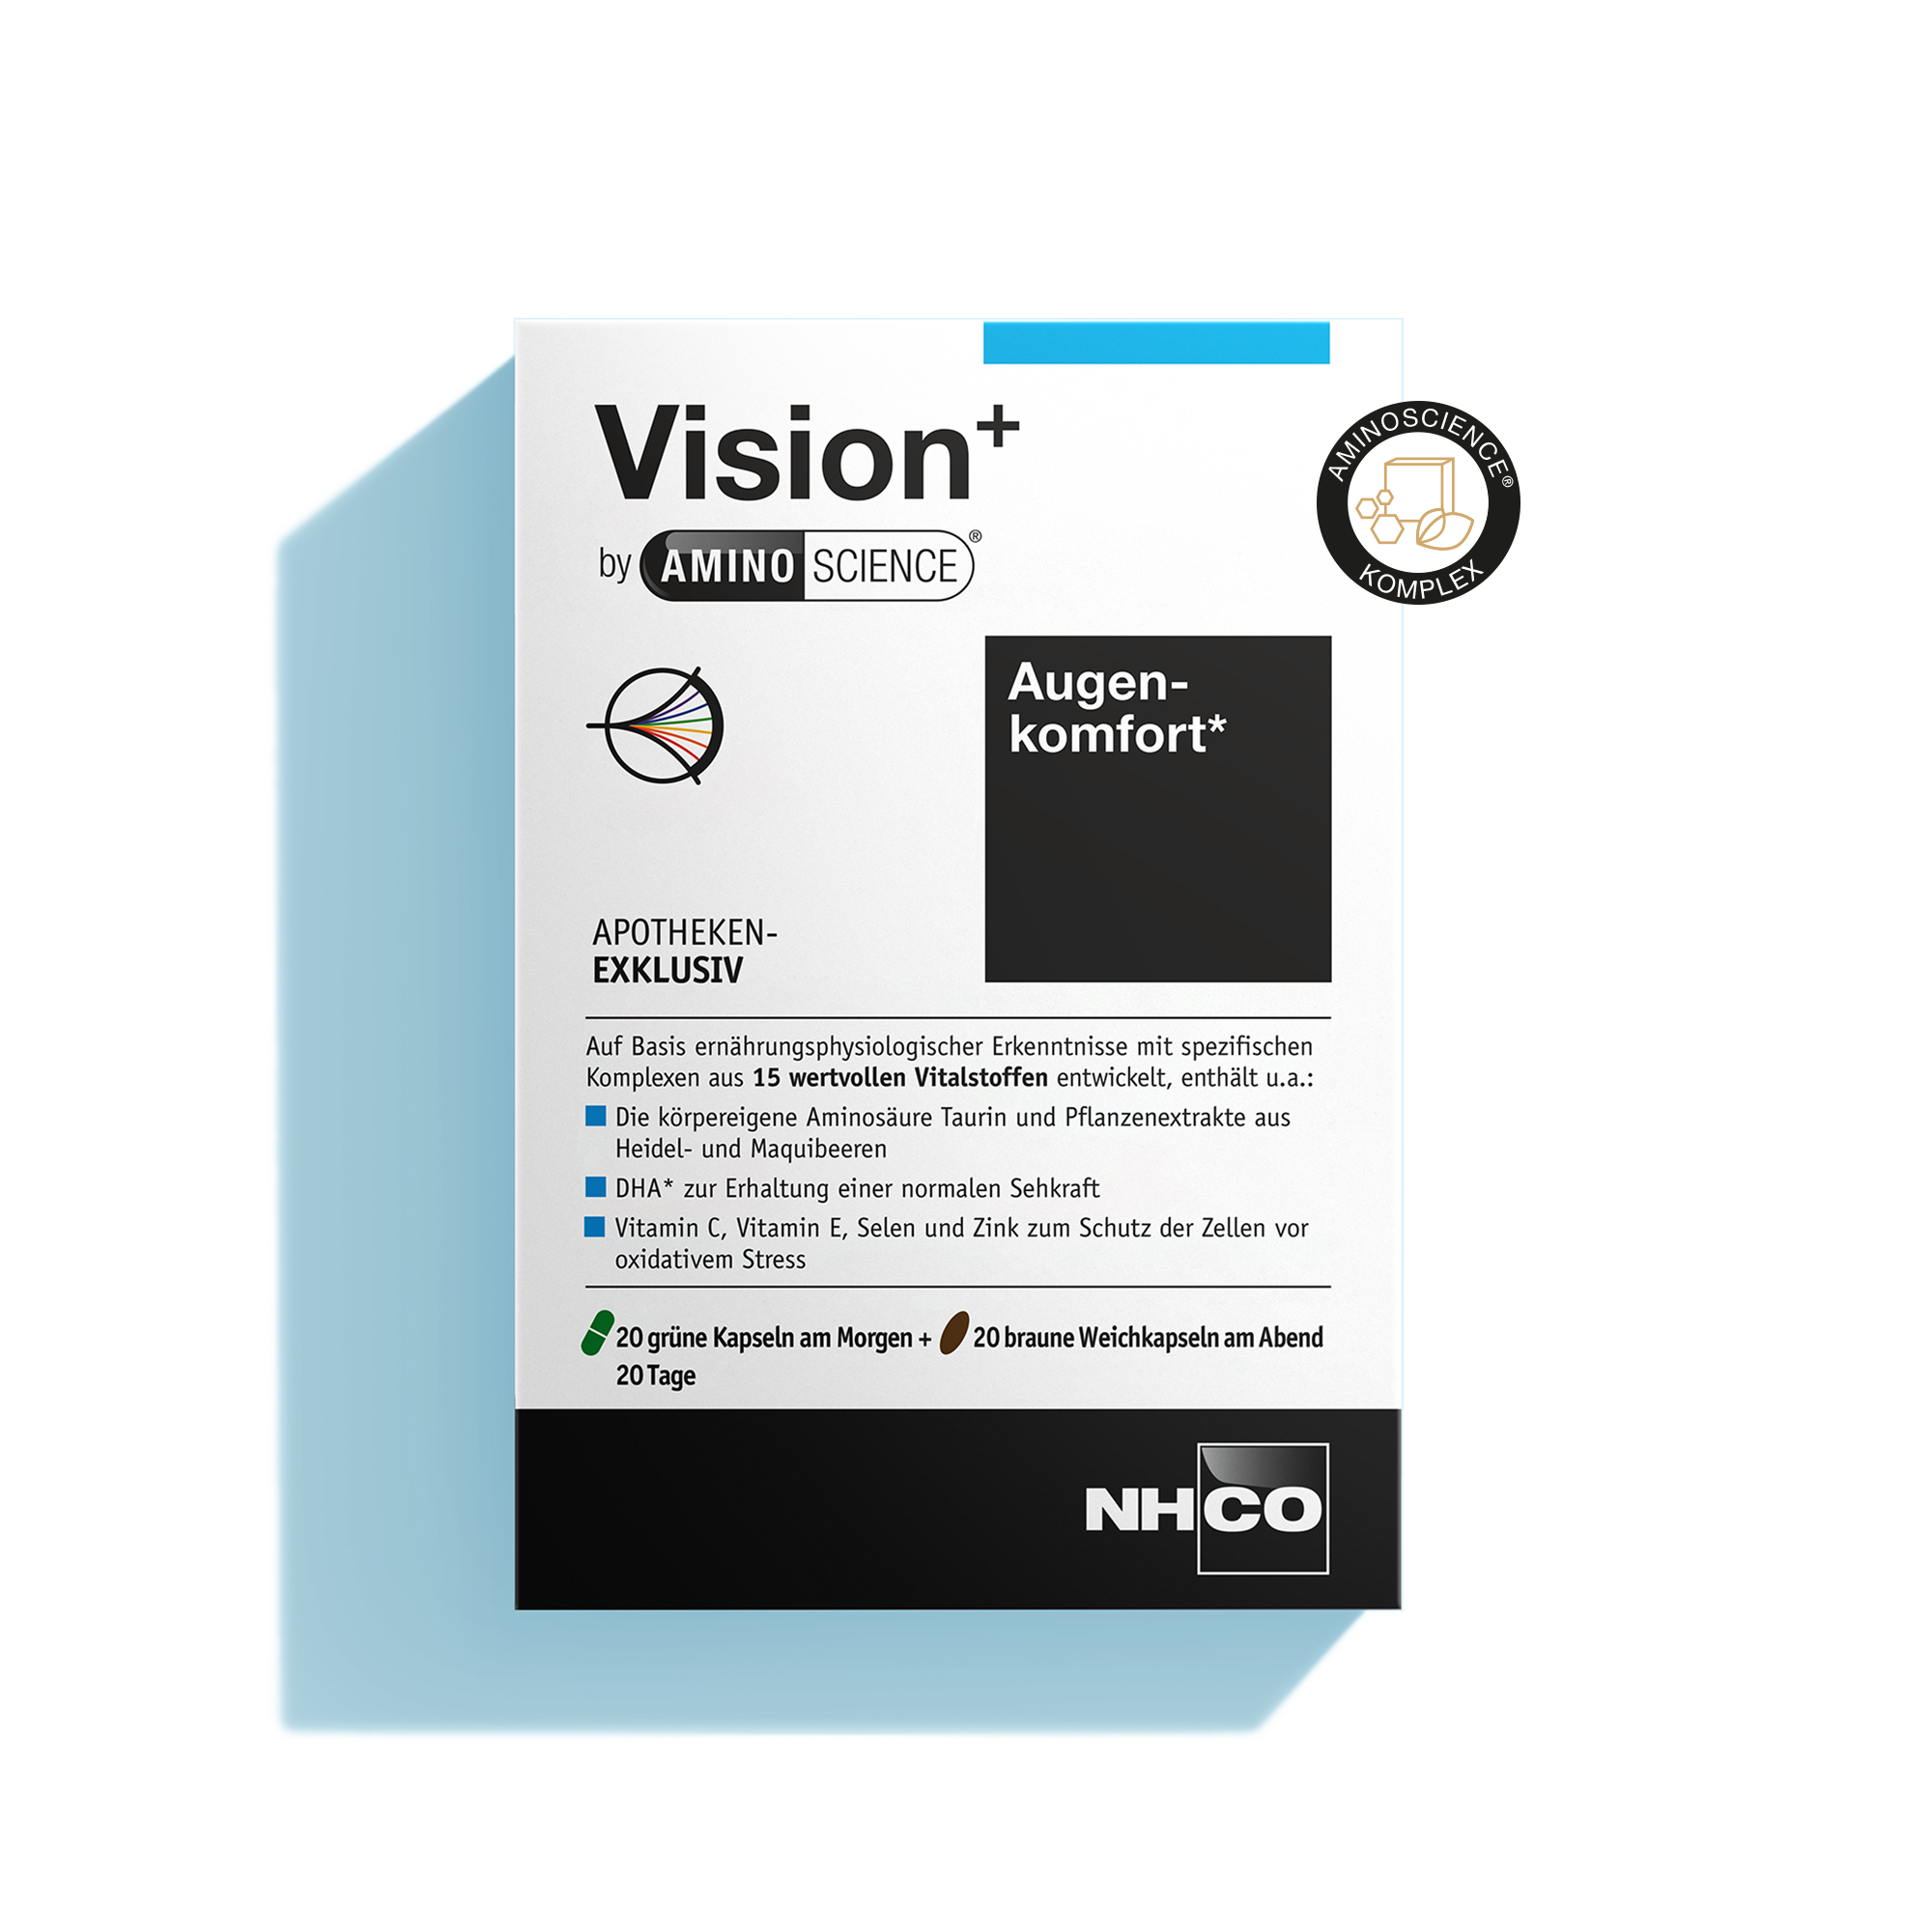 Verpackung von Vision+ AminoScience, Nahrungsergänzung für Augenkomfort, mit Aminosäuren und Mikronährstoffen.